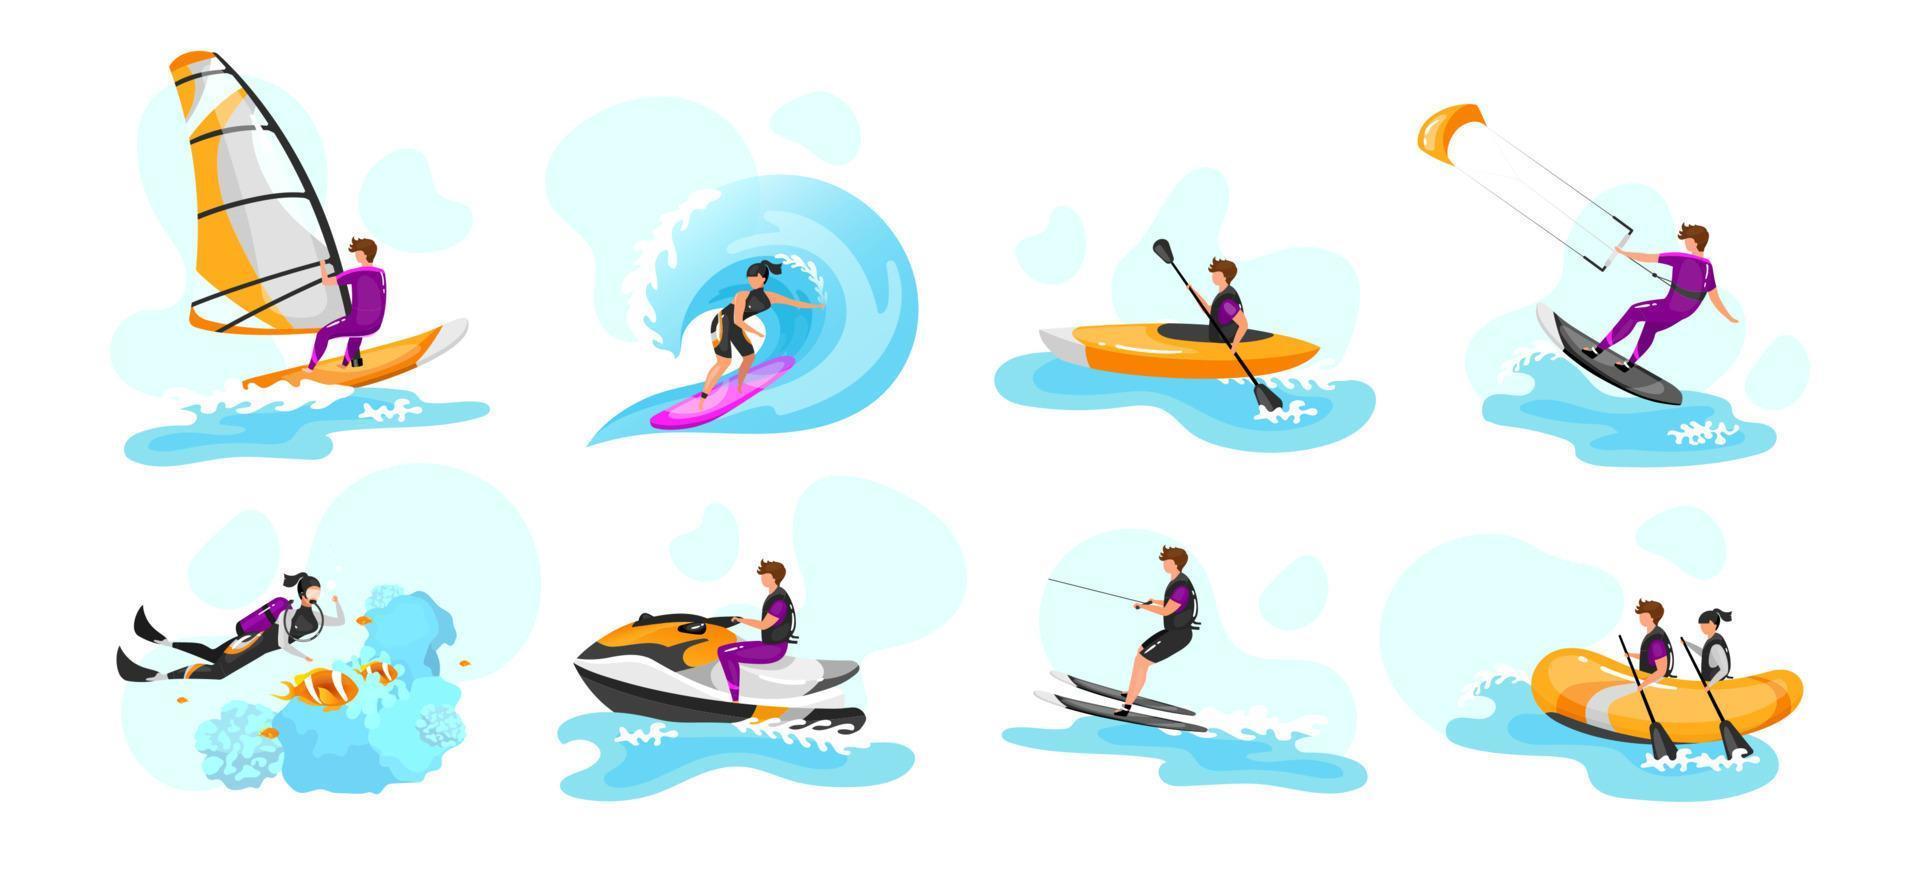 extrem vattensport platt vektorillustrationer set. surfing, paddling, kajakpaddling. dykning. vattenskidåkning idrottsman. kitesurfing idrottsman. par på båt. idrottare isolerade seriefigurer vektor